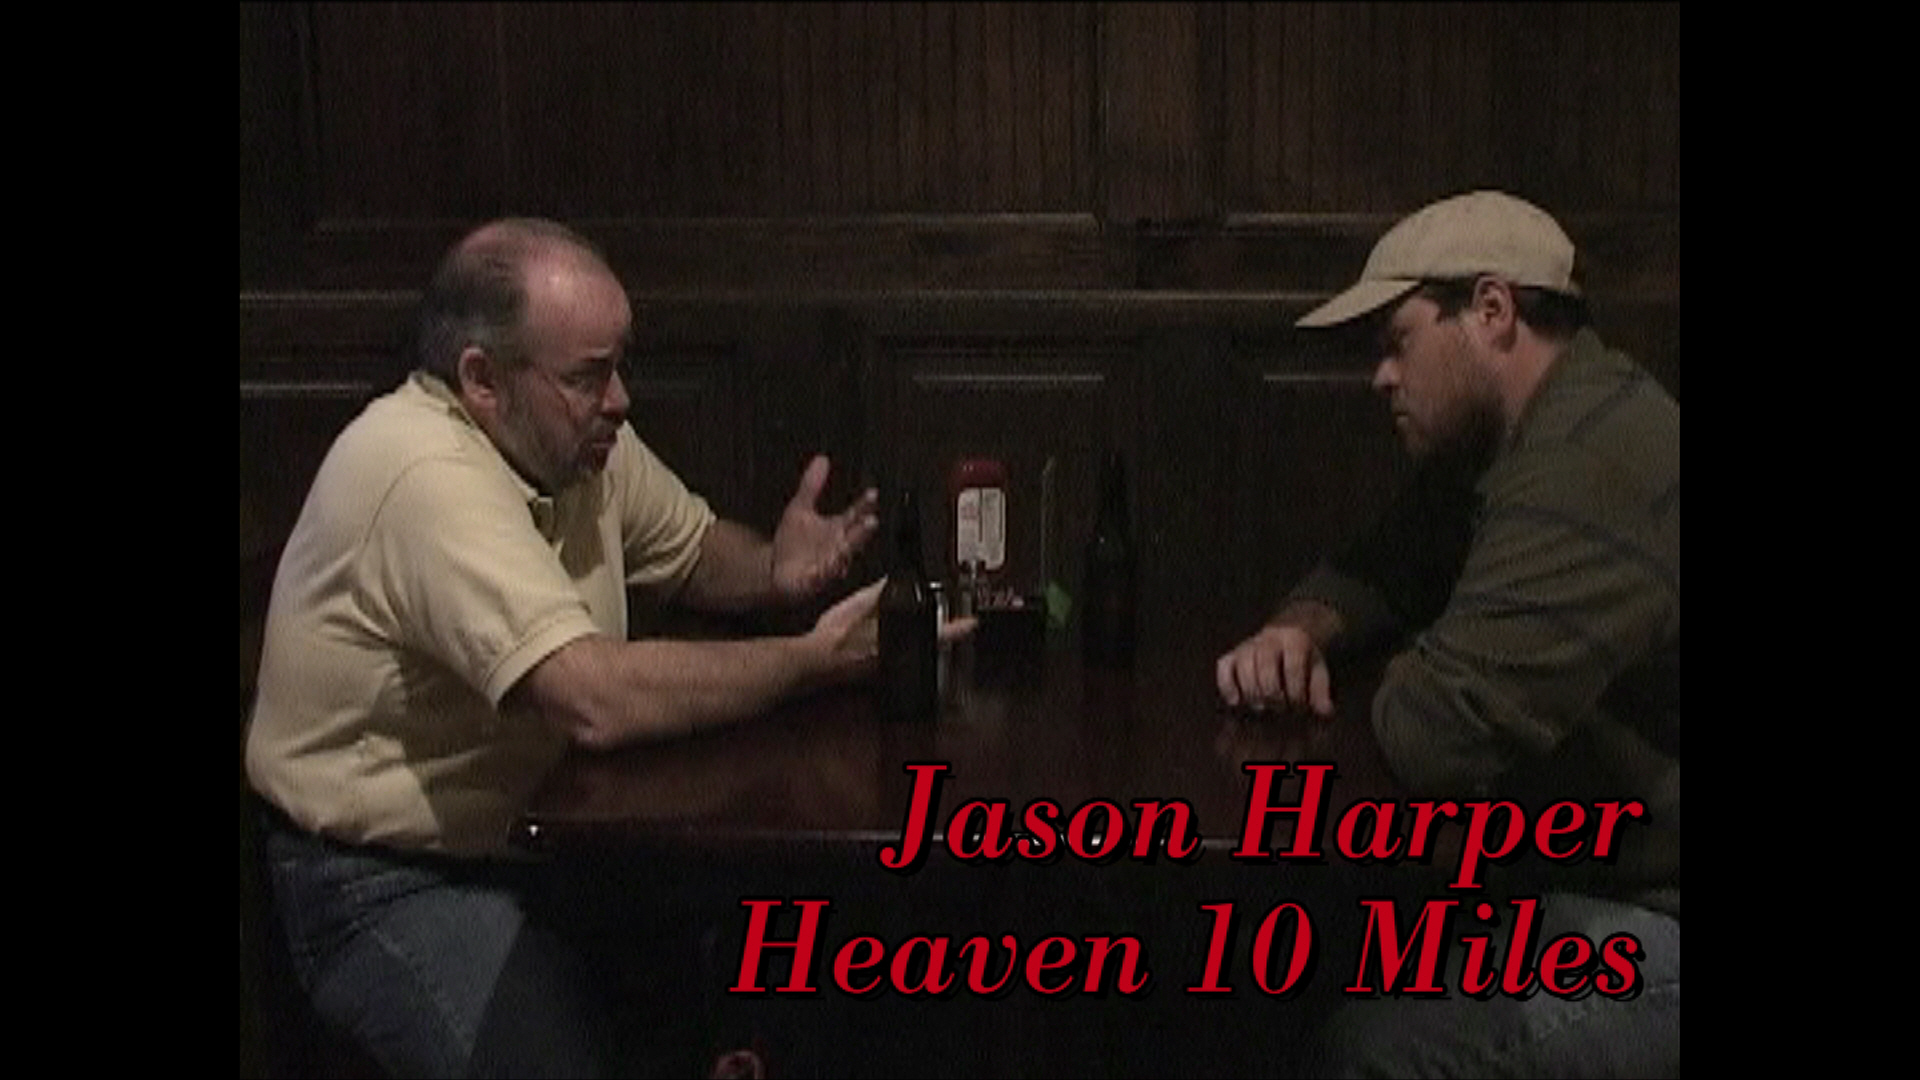 Short film, Heaven 10 Miles Co-Staring as Jason Harper